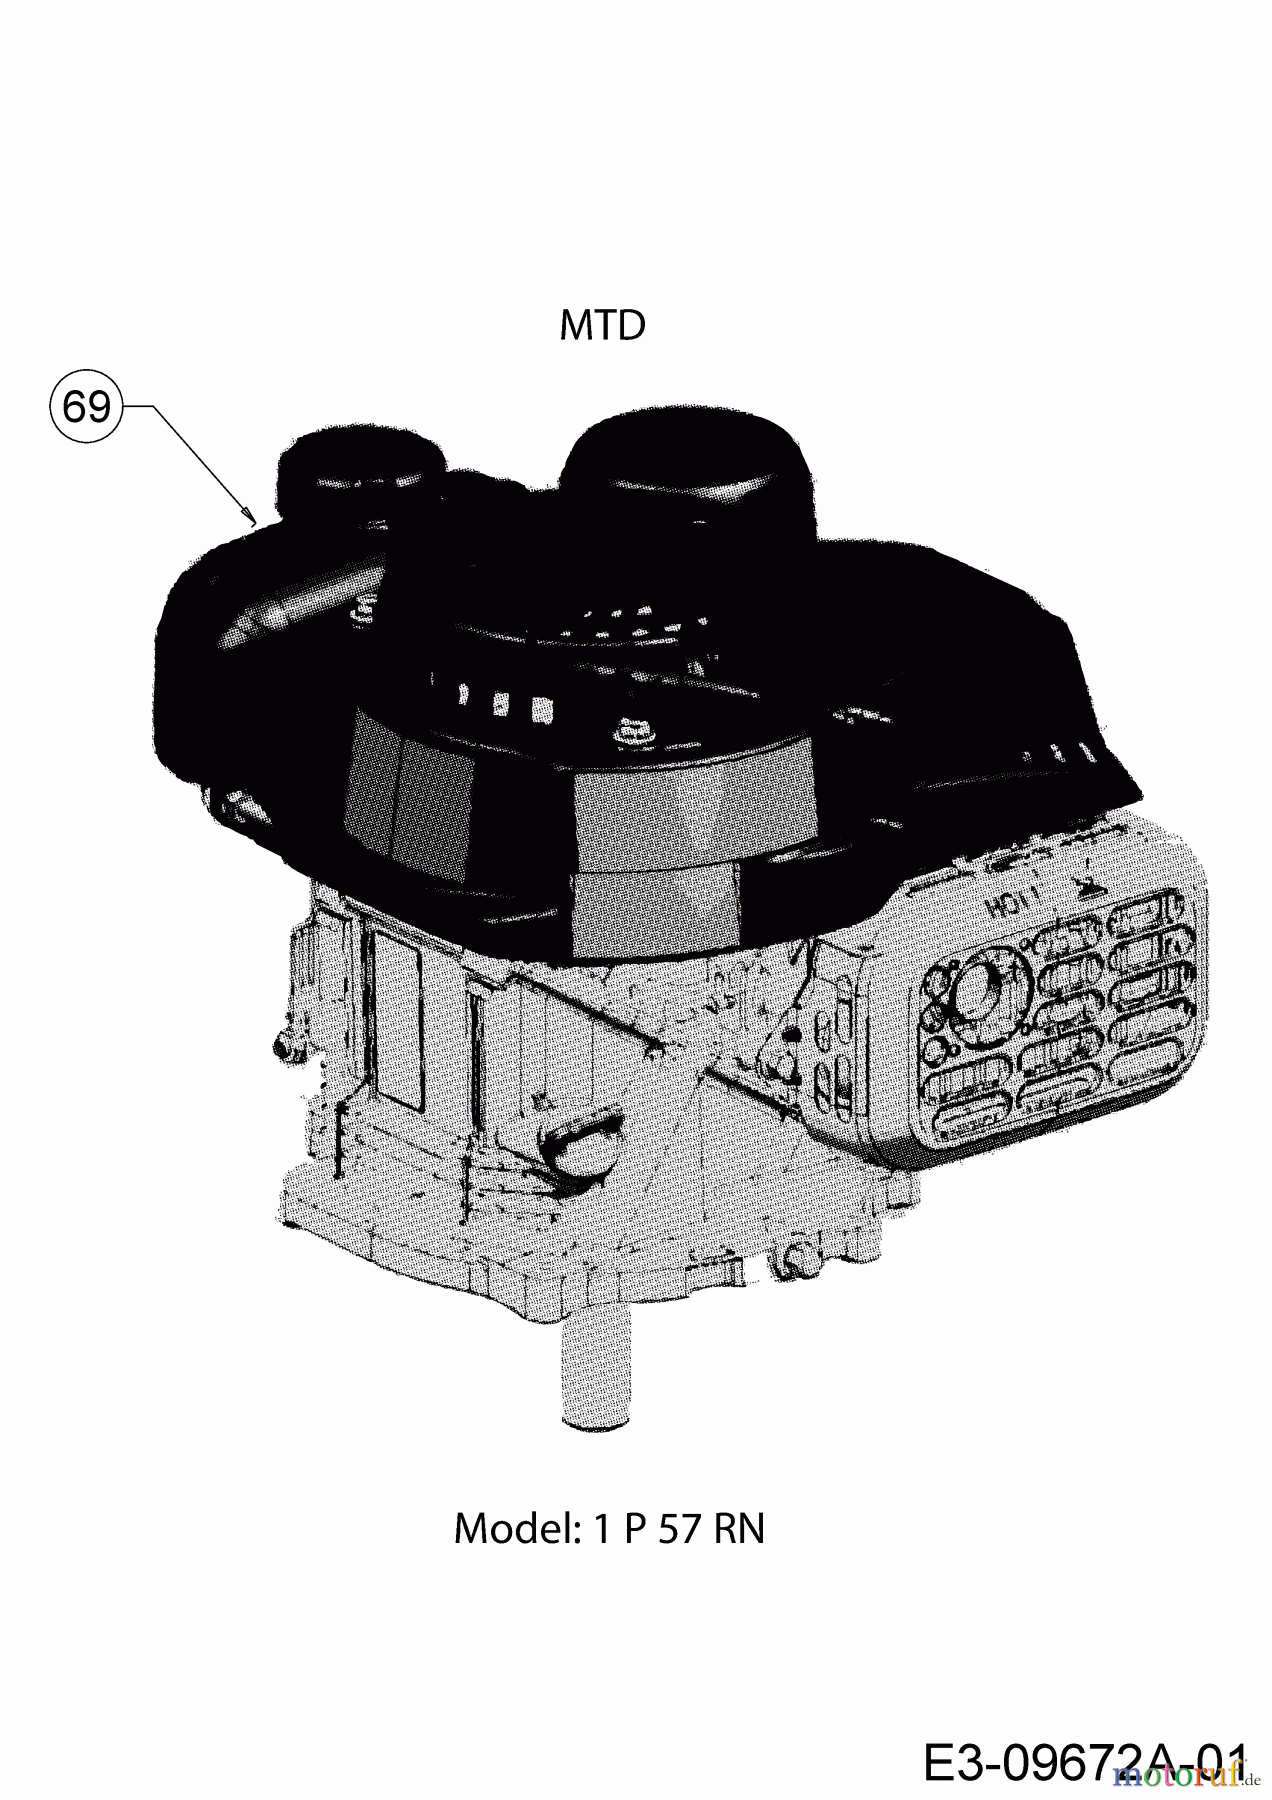  MTD Petrol mower Smart 51 BO 11B-02SH600 (2020) Engine MTD